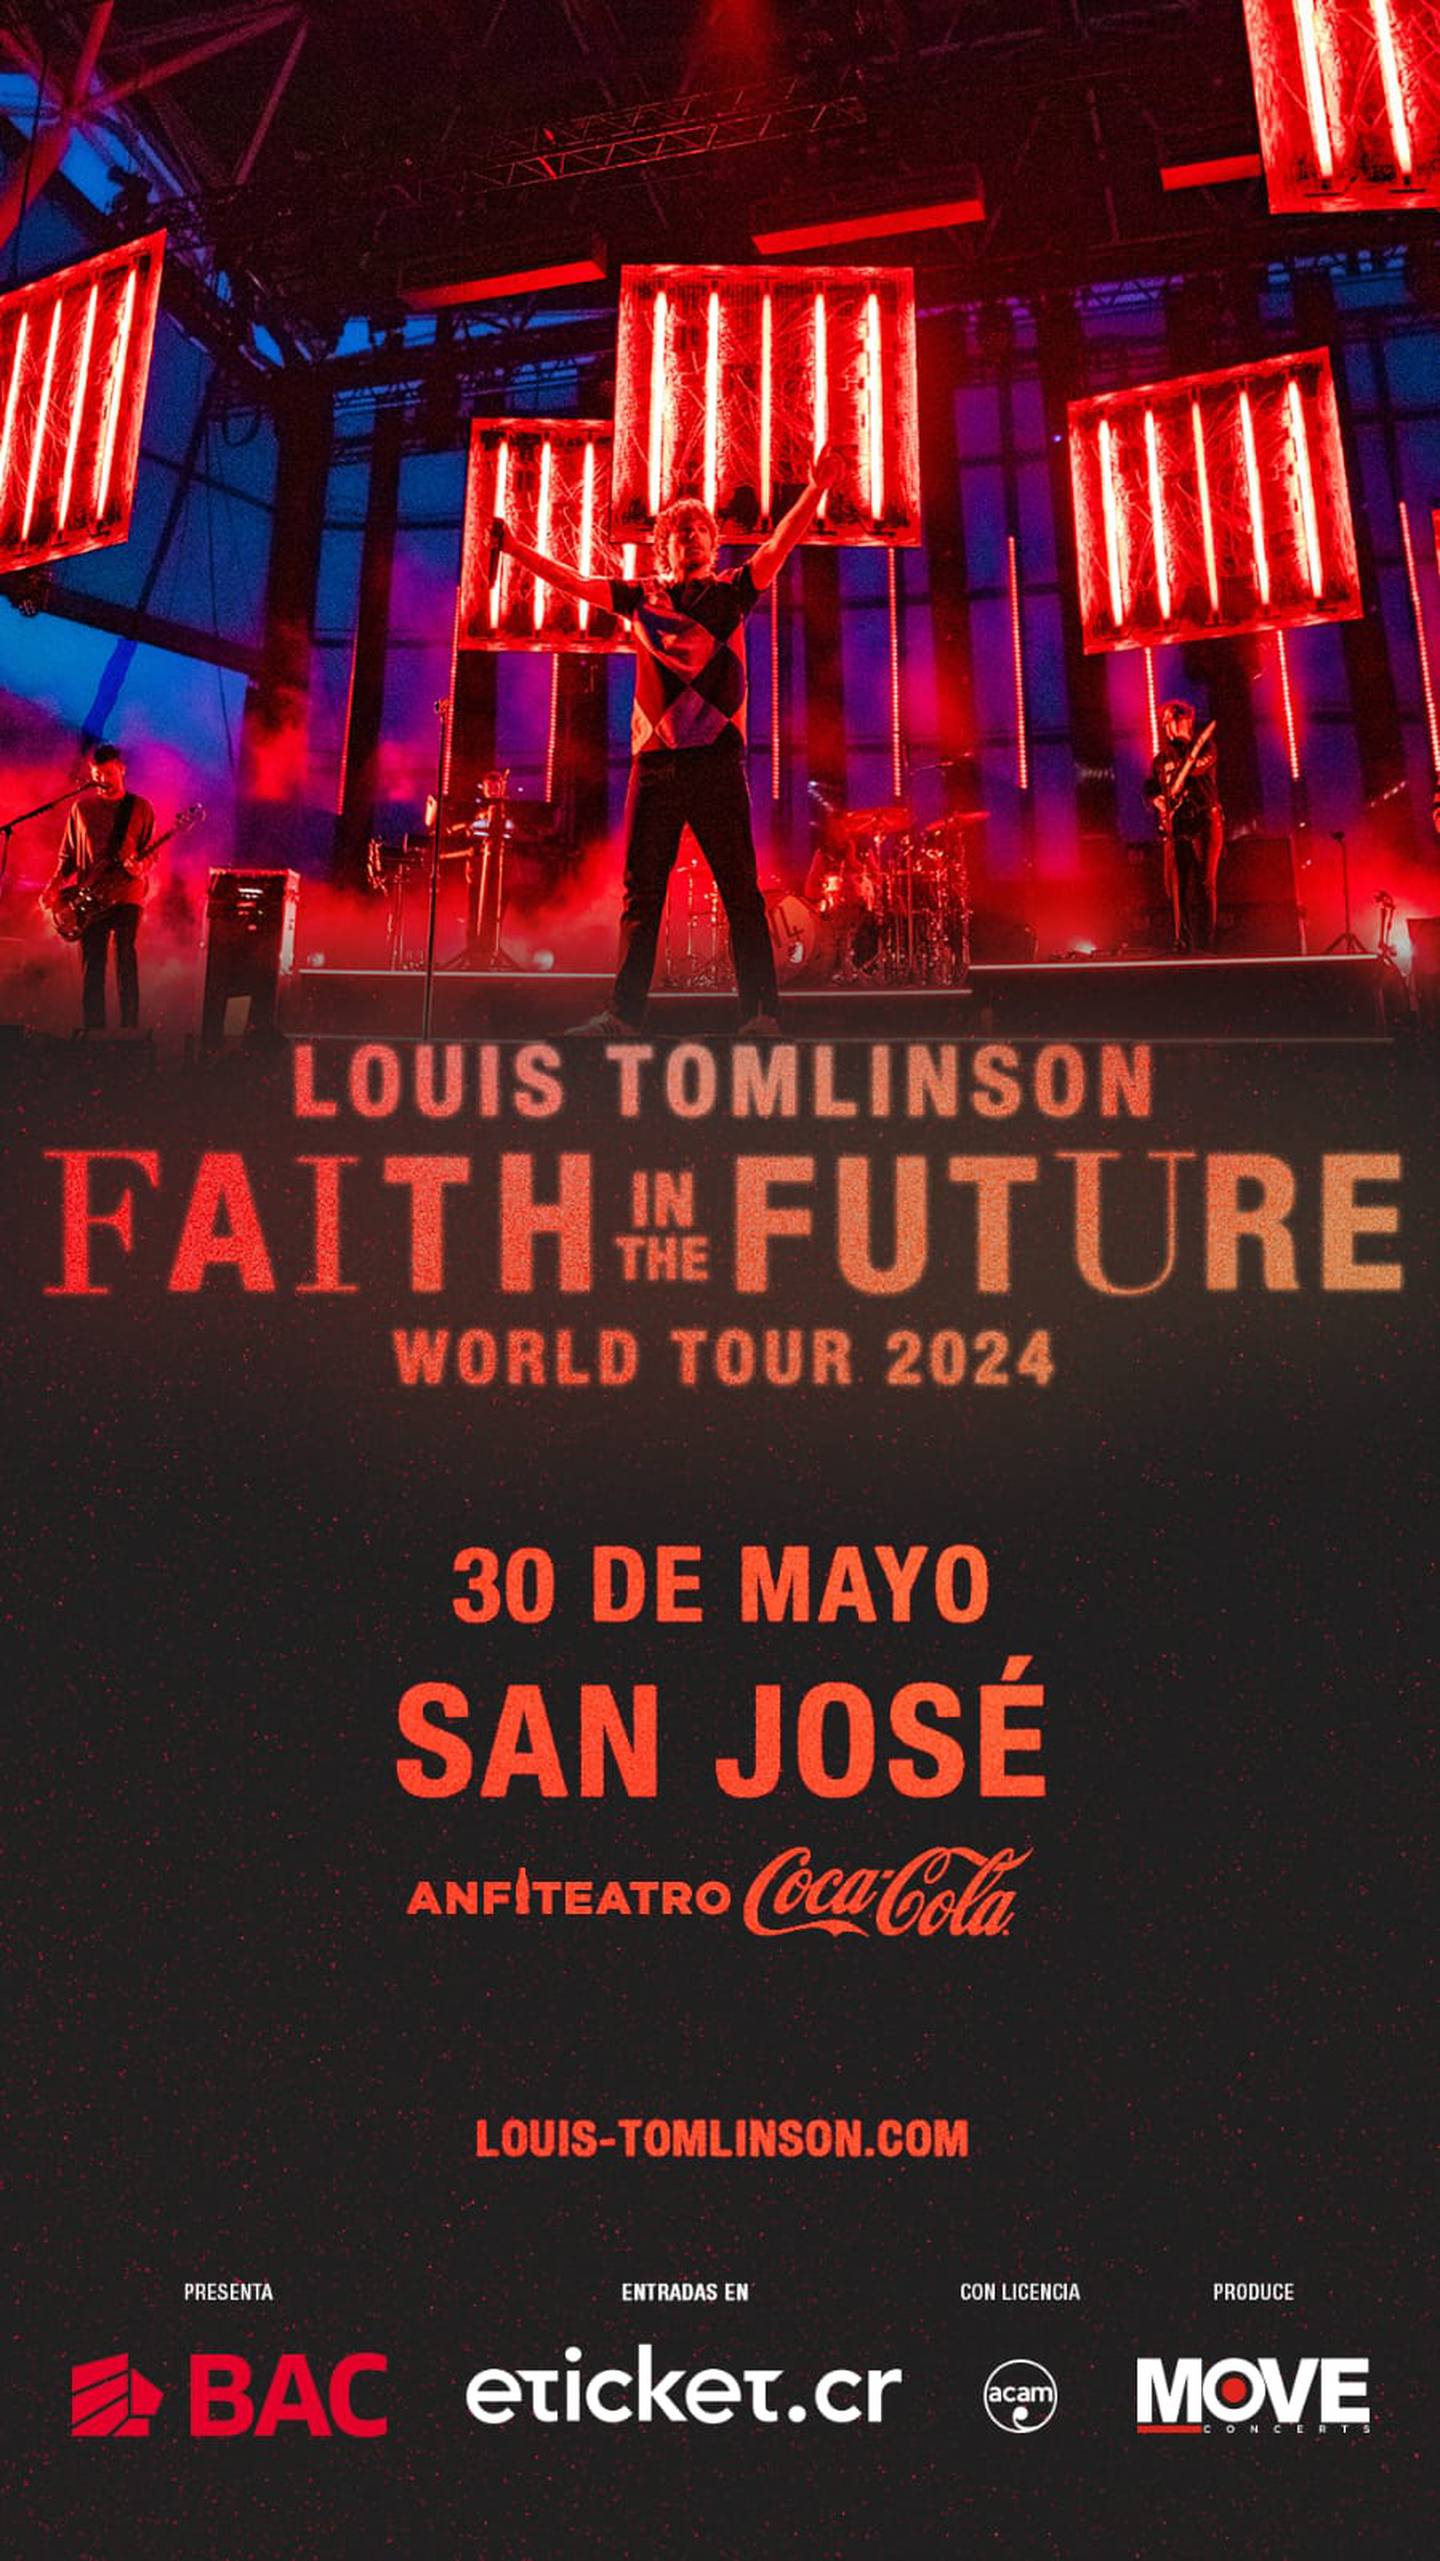 La productora Move Concerts es la encargada del montaje del concierto de Louis Tomlinson en Costa Rica.